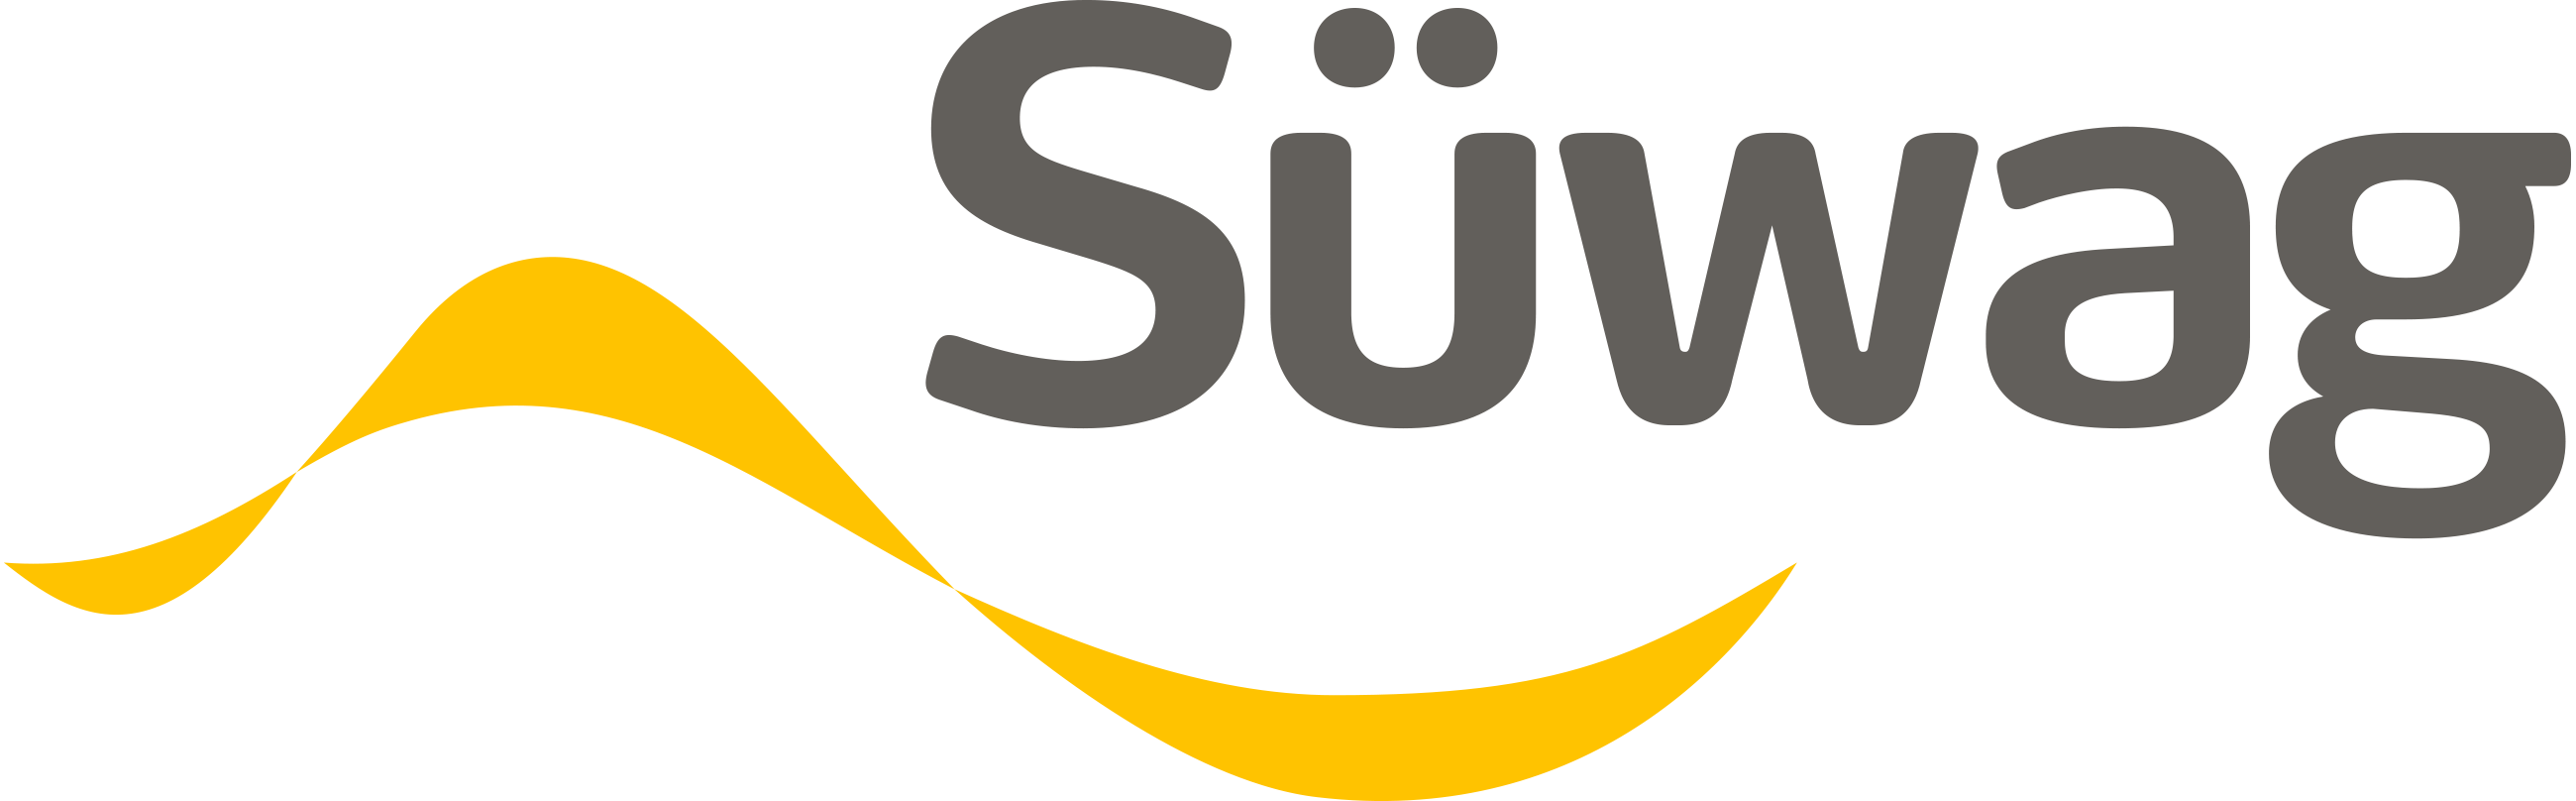 swag logo2017 p rgb